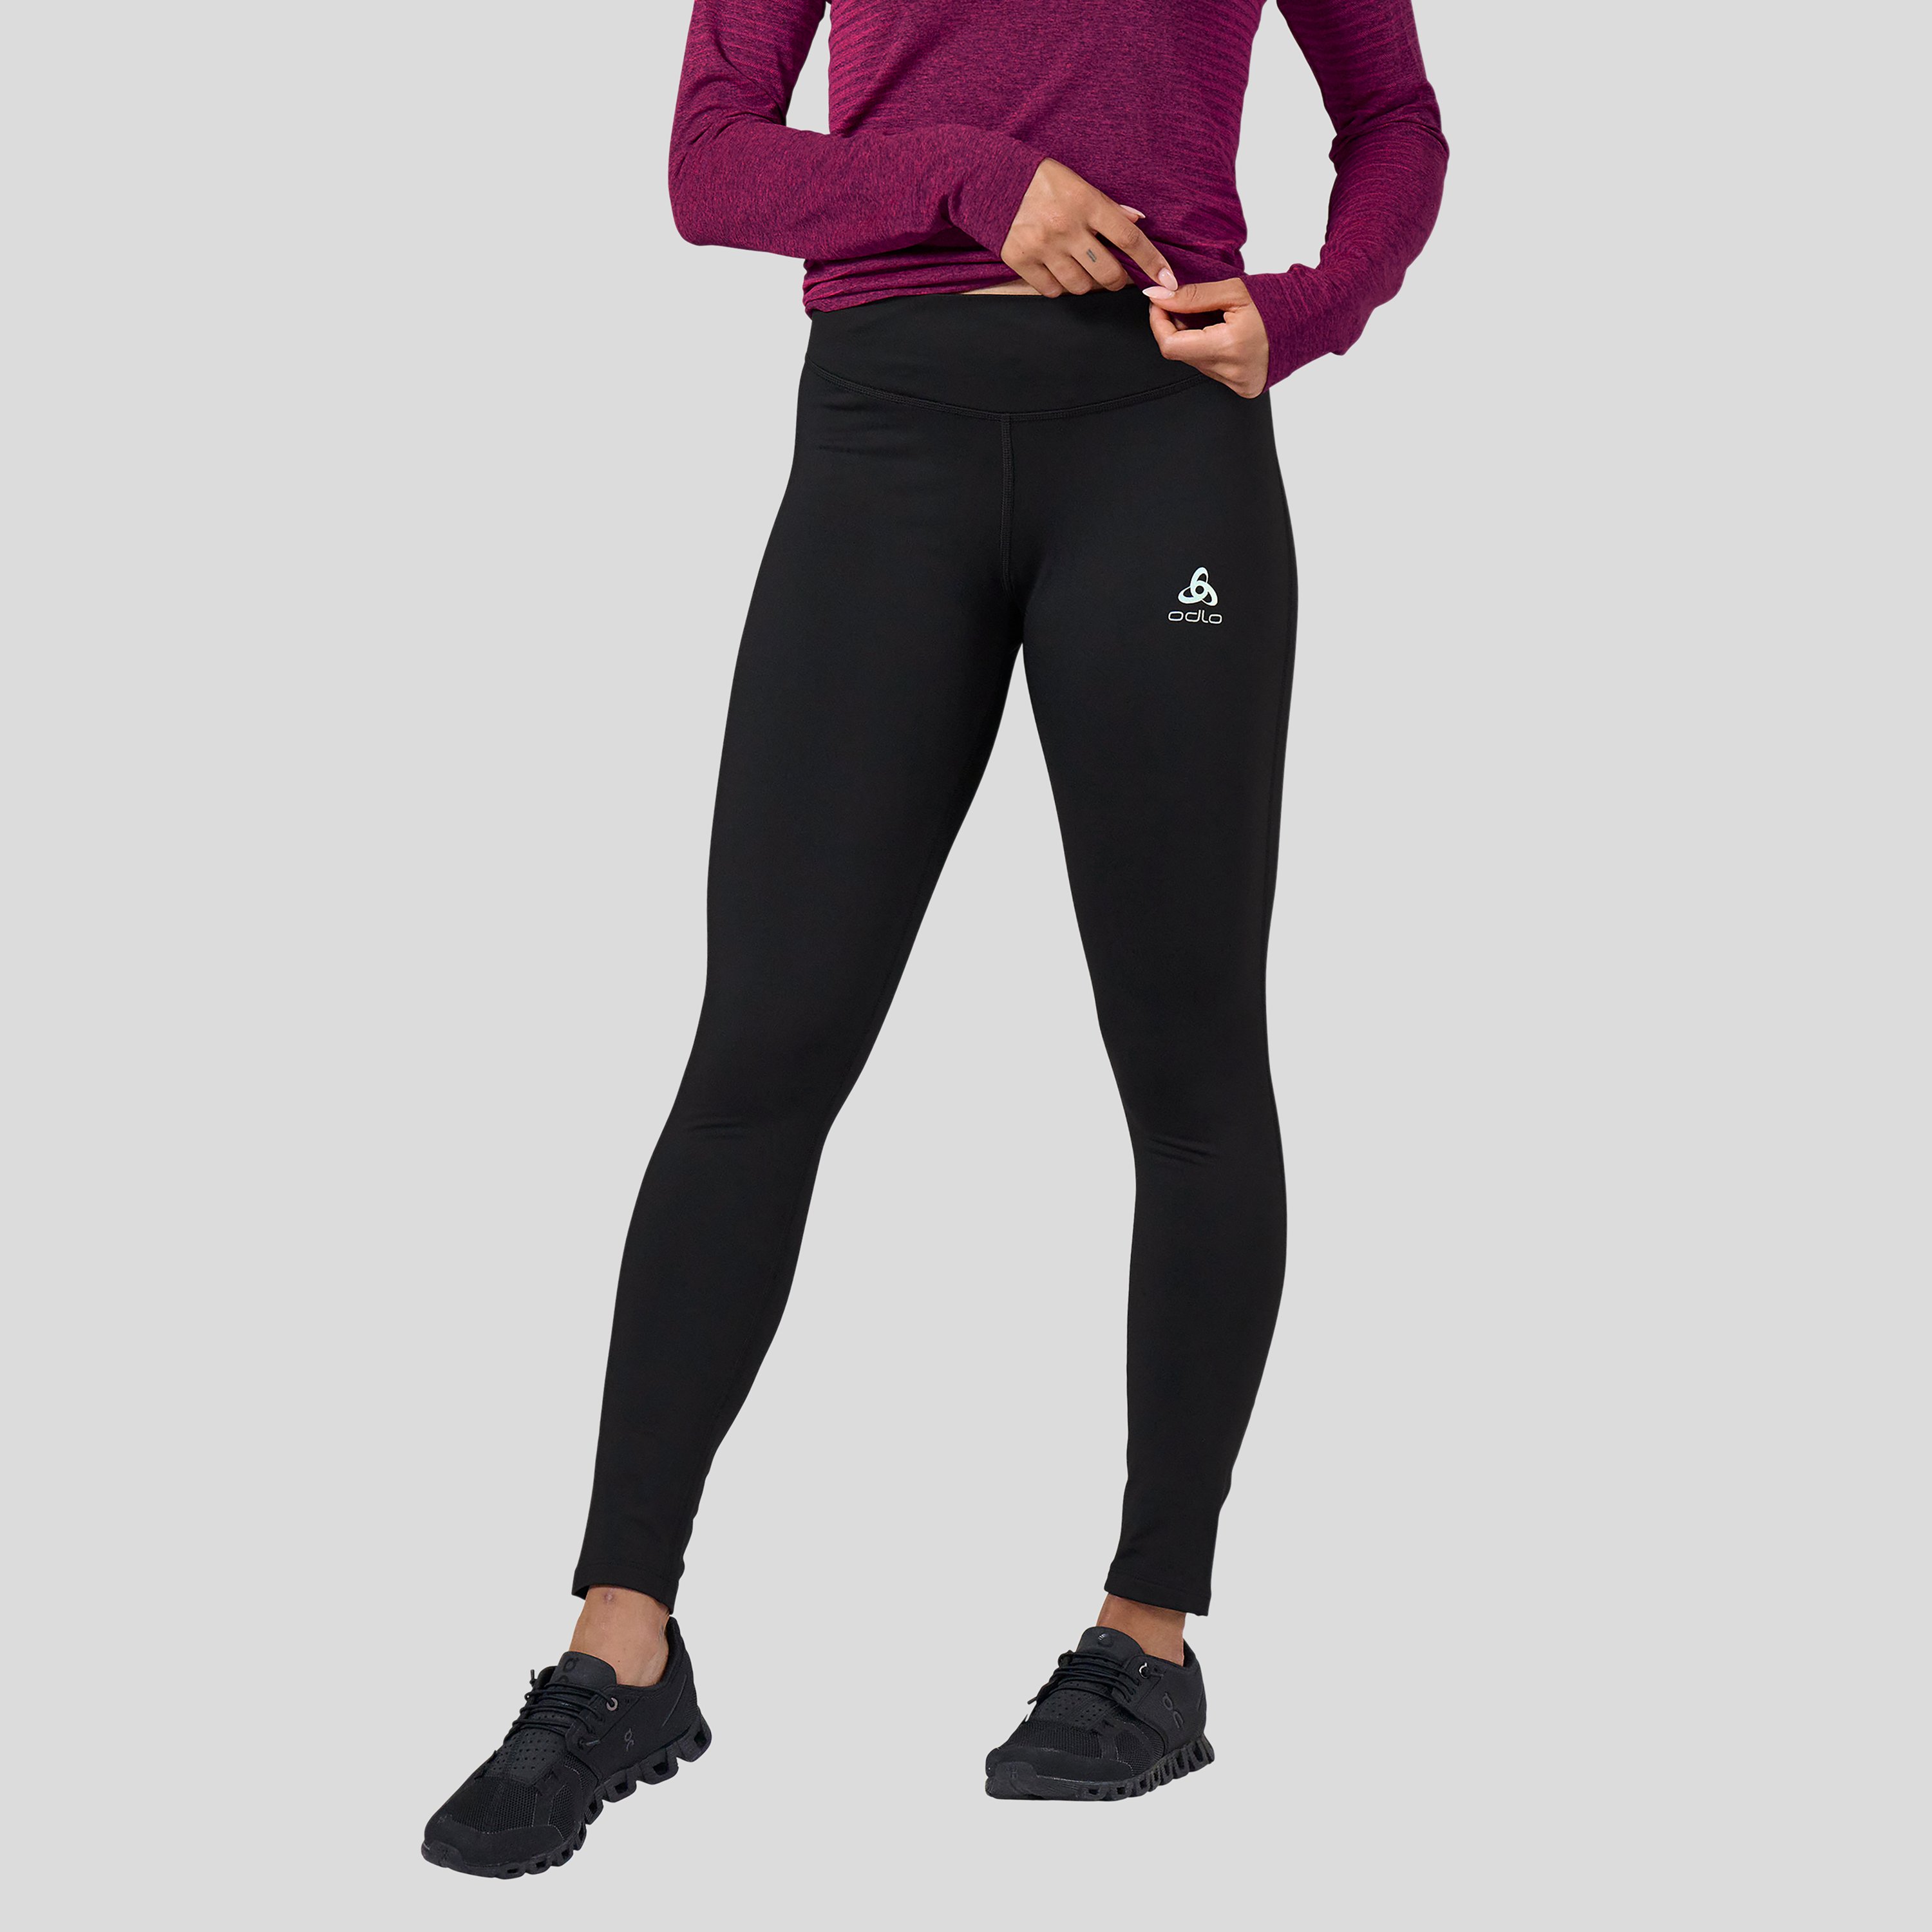 ODLO Essentials Warm Lauf- und Trainings-Tights für Damen, L, schwarz